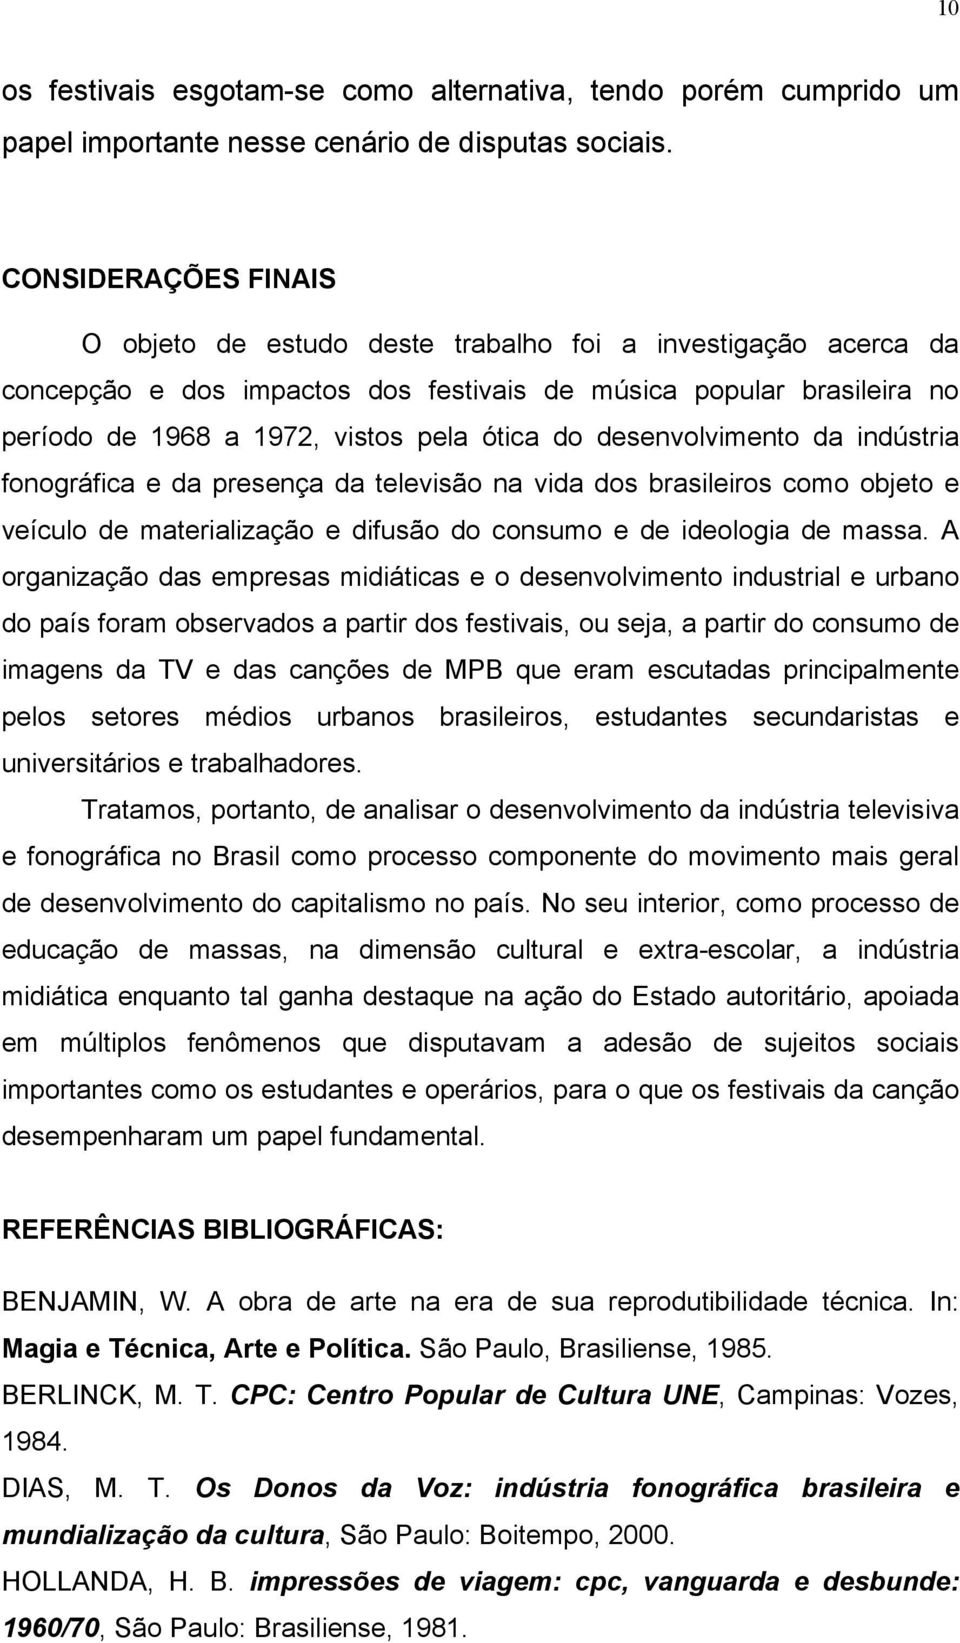 desenvolvimento da indústria fonográfica e da presença da televisão na vida dos brasileiros como objeto e veículo de materialização e difusão do consumo e de ideologia de massa.